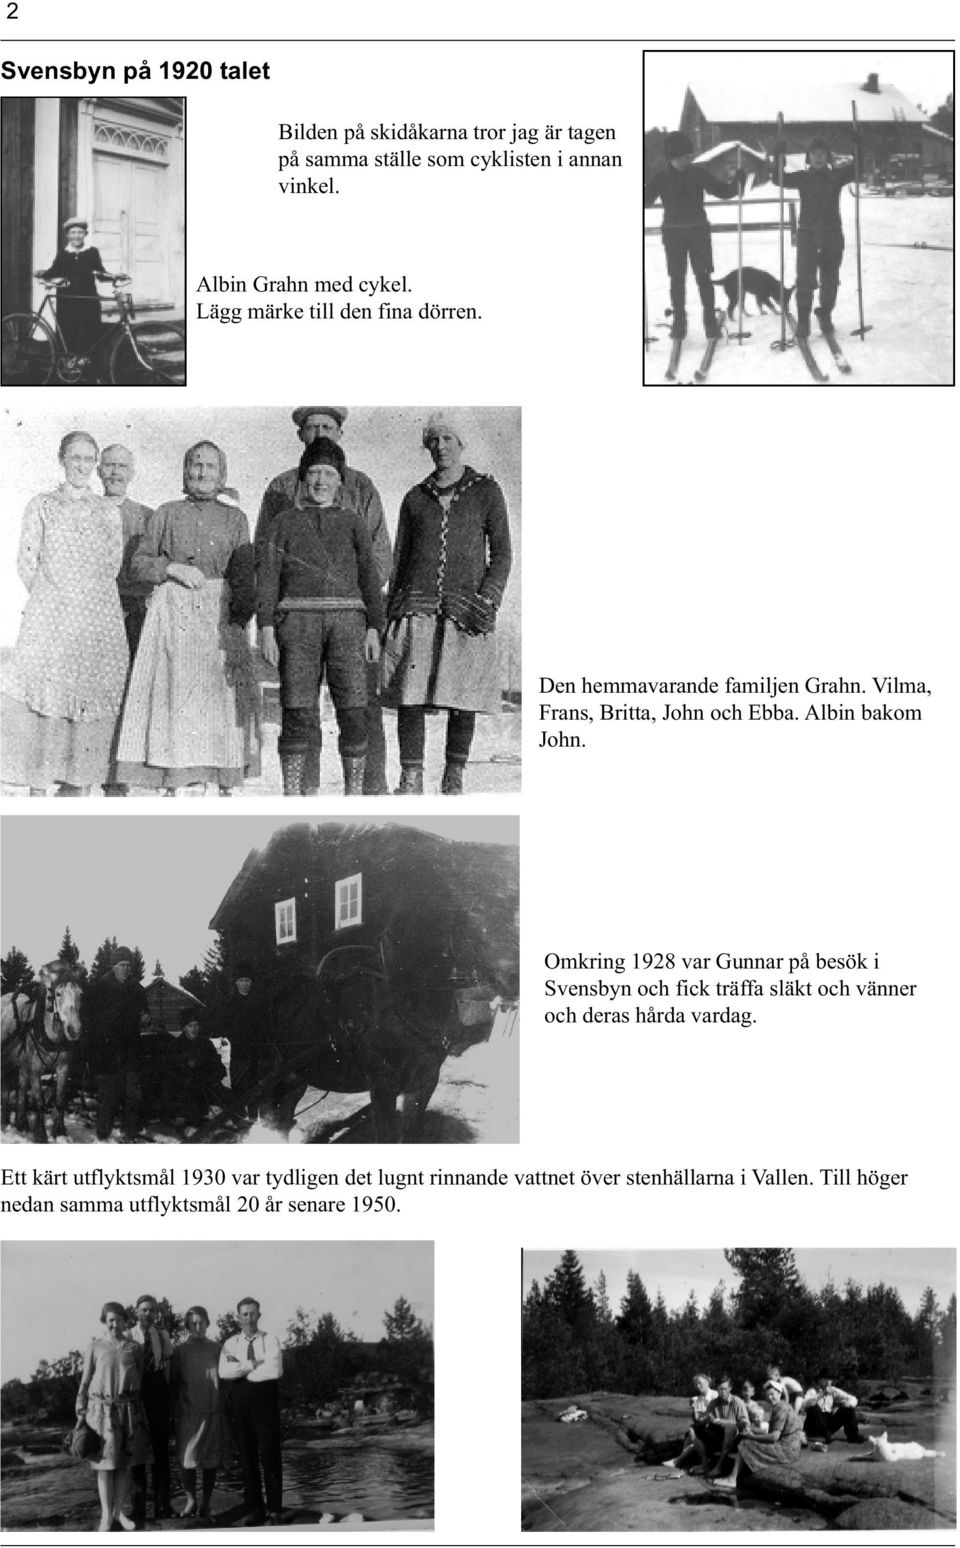 Albin bakom John. Omkring 1928 var Gunnar på besök i Svensbyn och fick träffa släkt och vänner och deras hårda vardag.